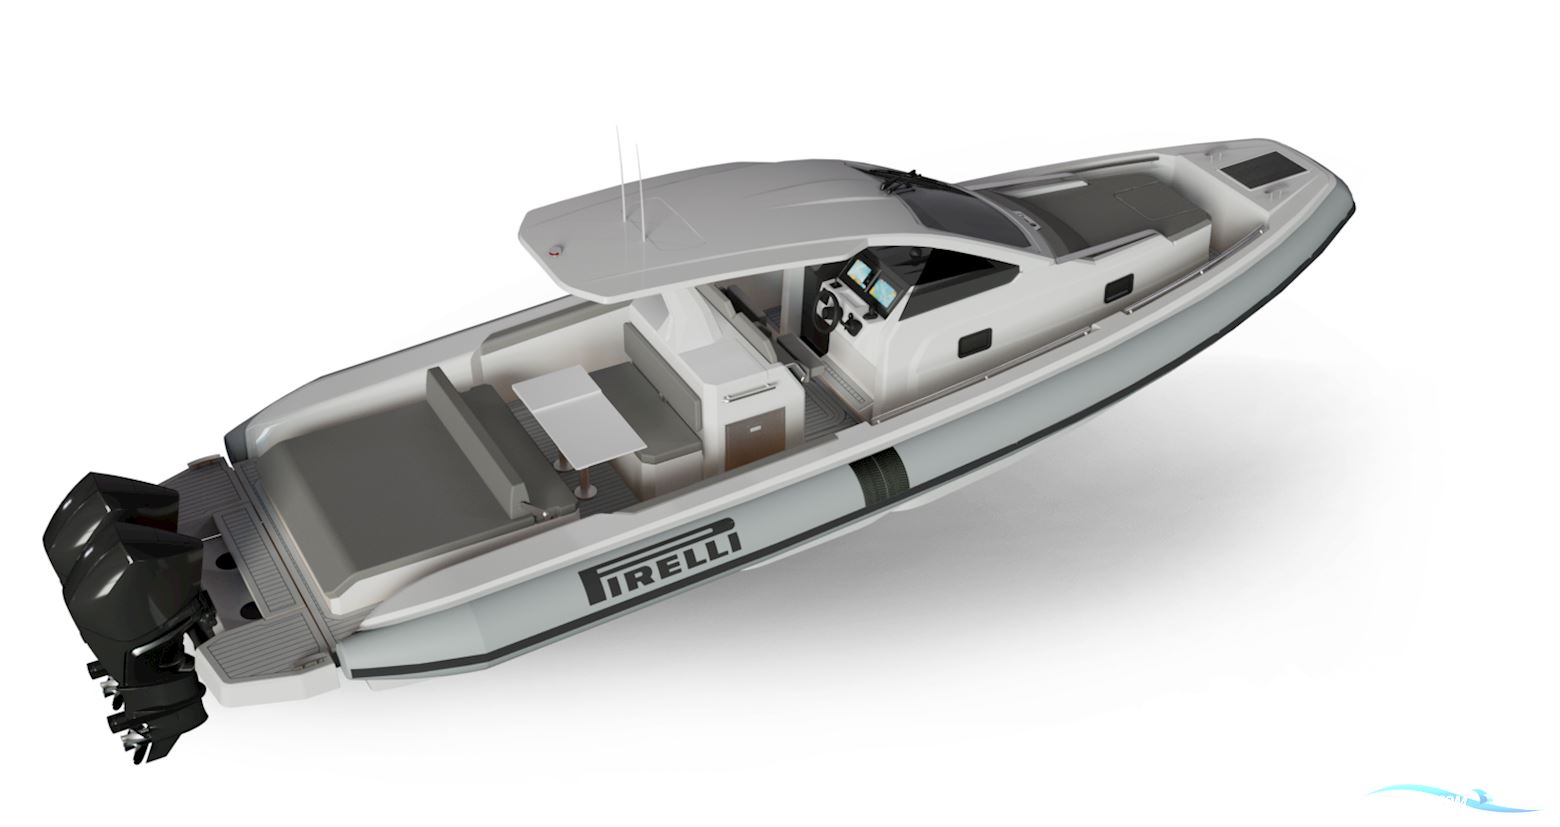 Pirelli 35 Motorbåt 2024, med Mercury motor, Holland